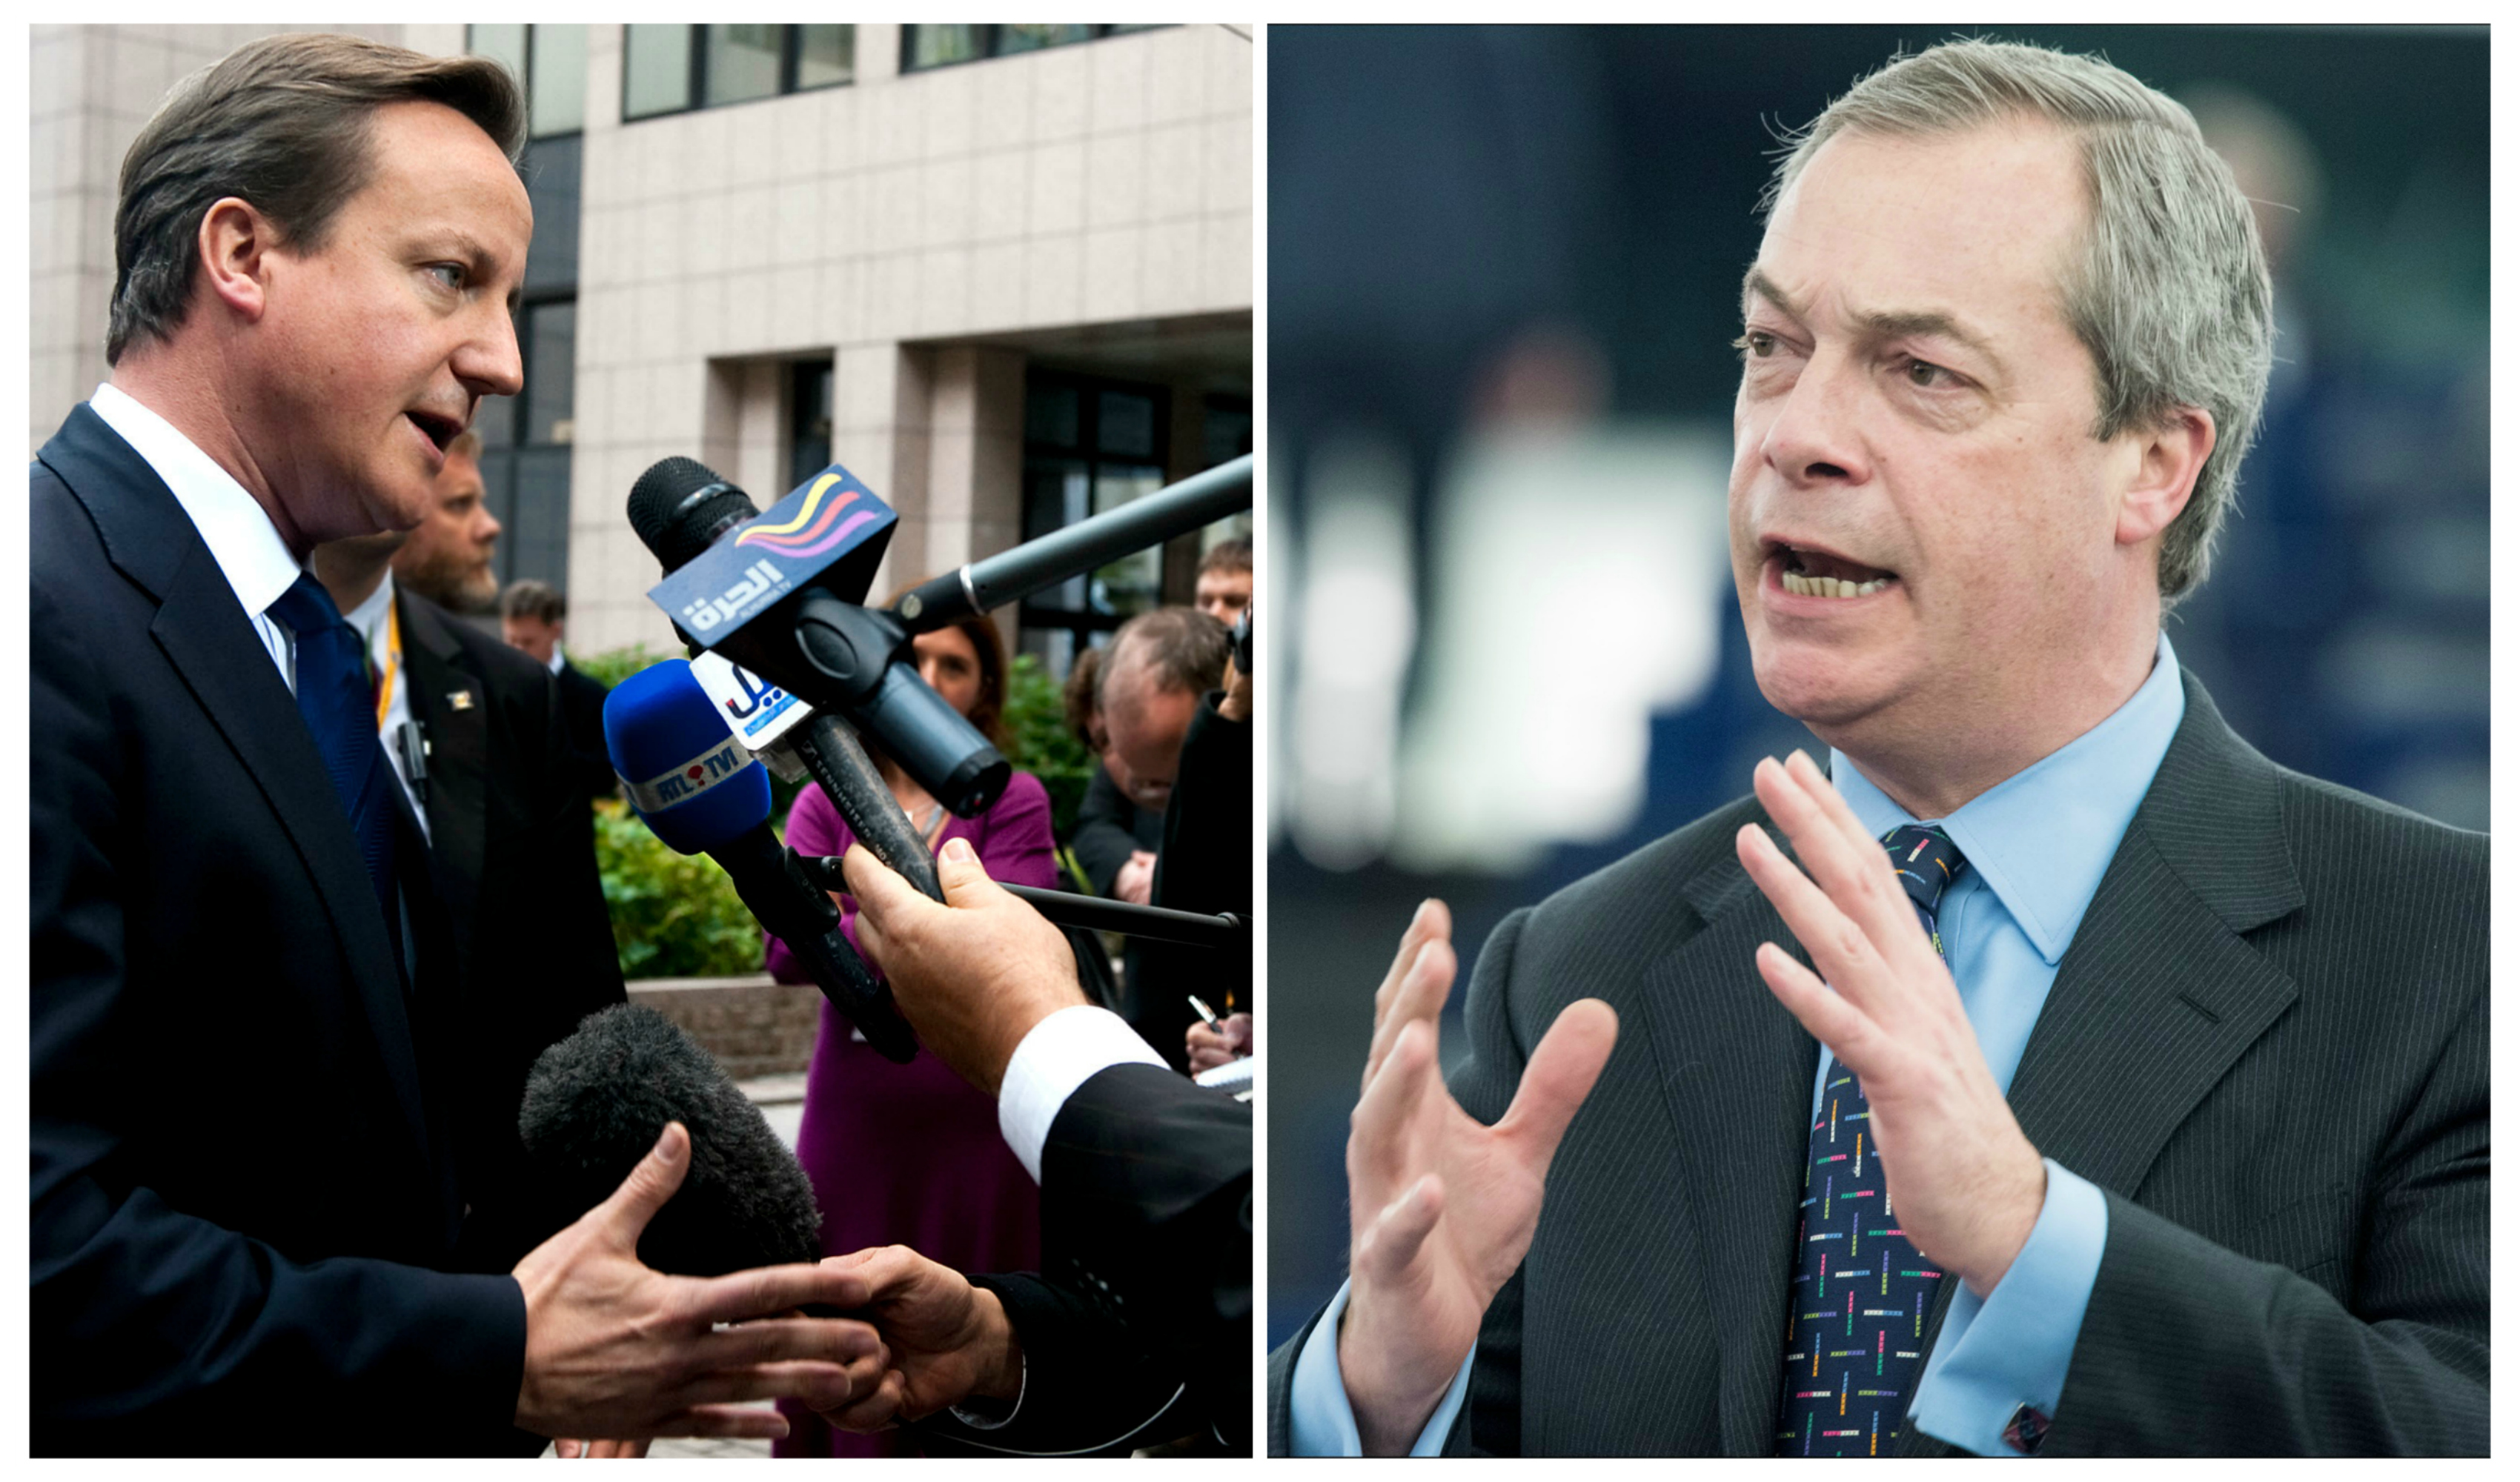 Britannian pääministeri David Cameron ja UKIP-puolueen puheenjohtaja Nigel Farage.